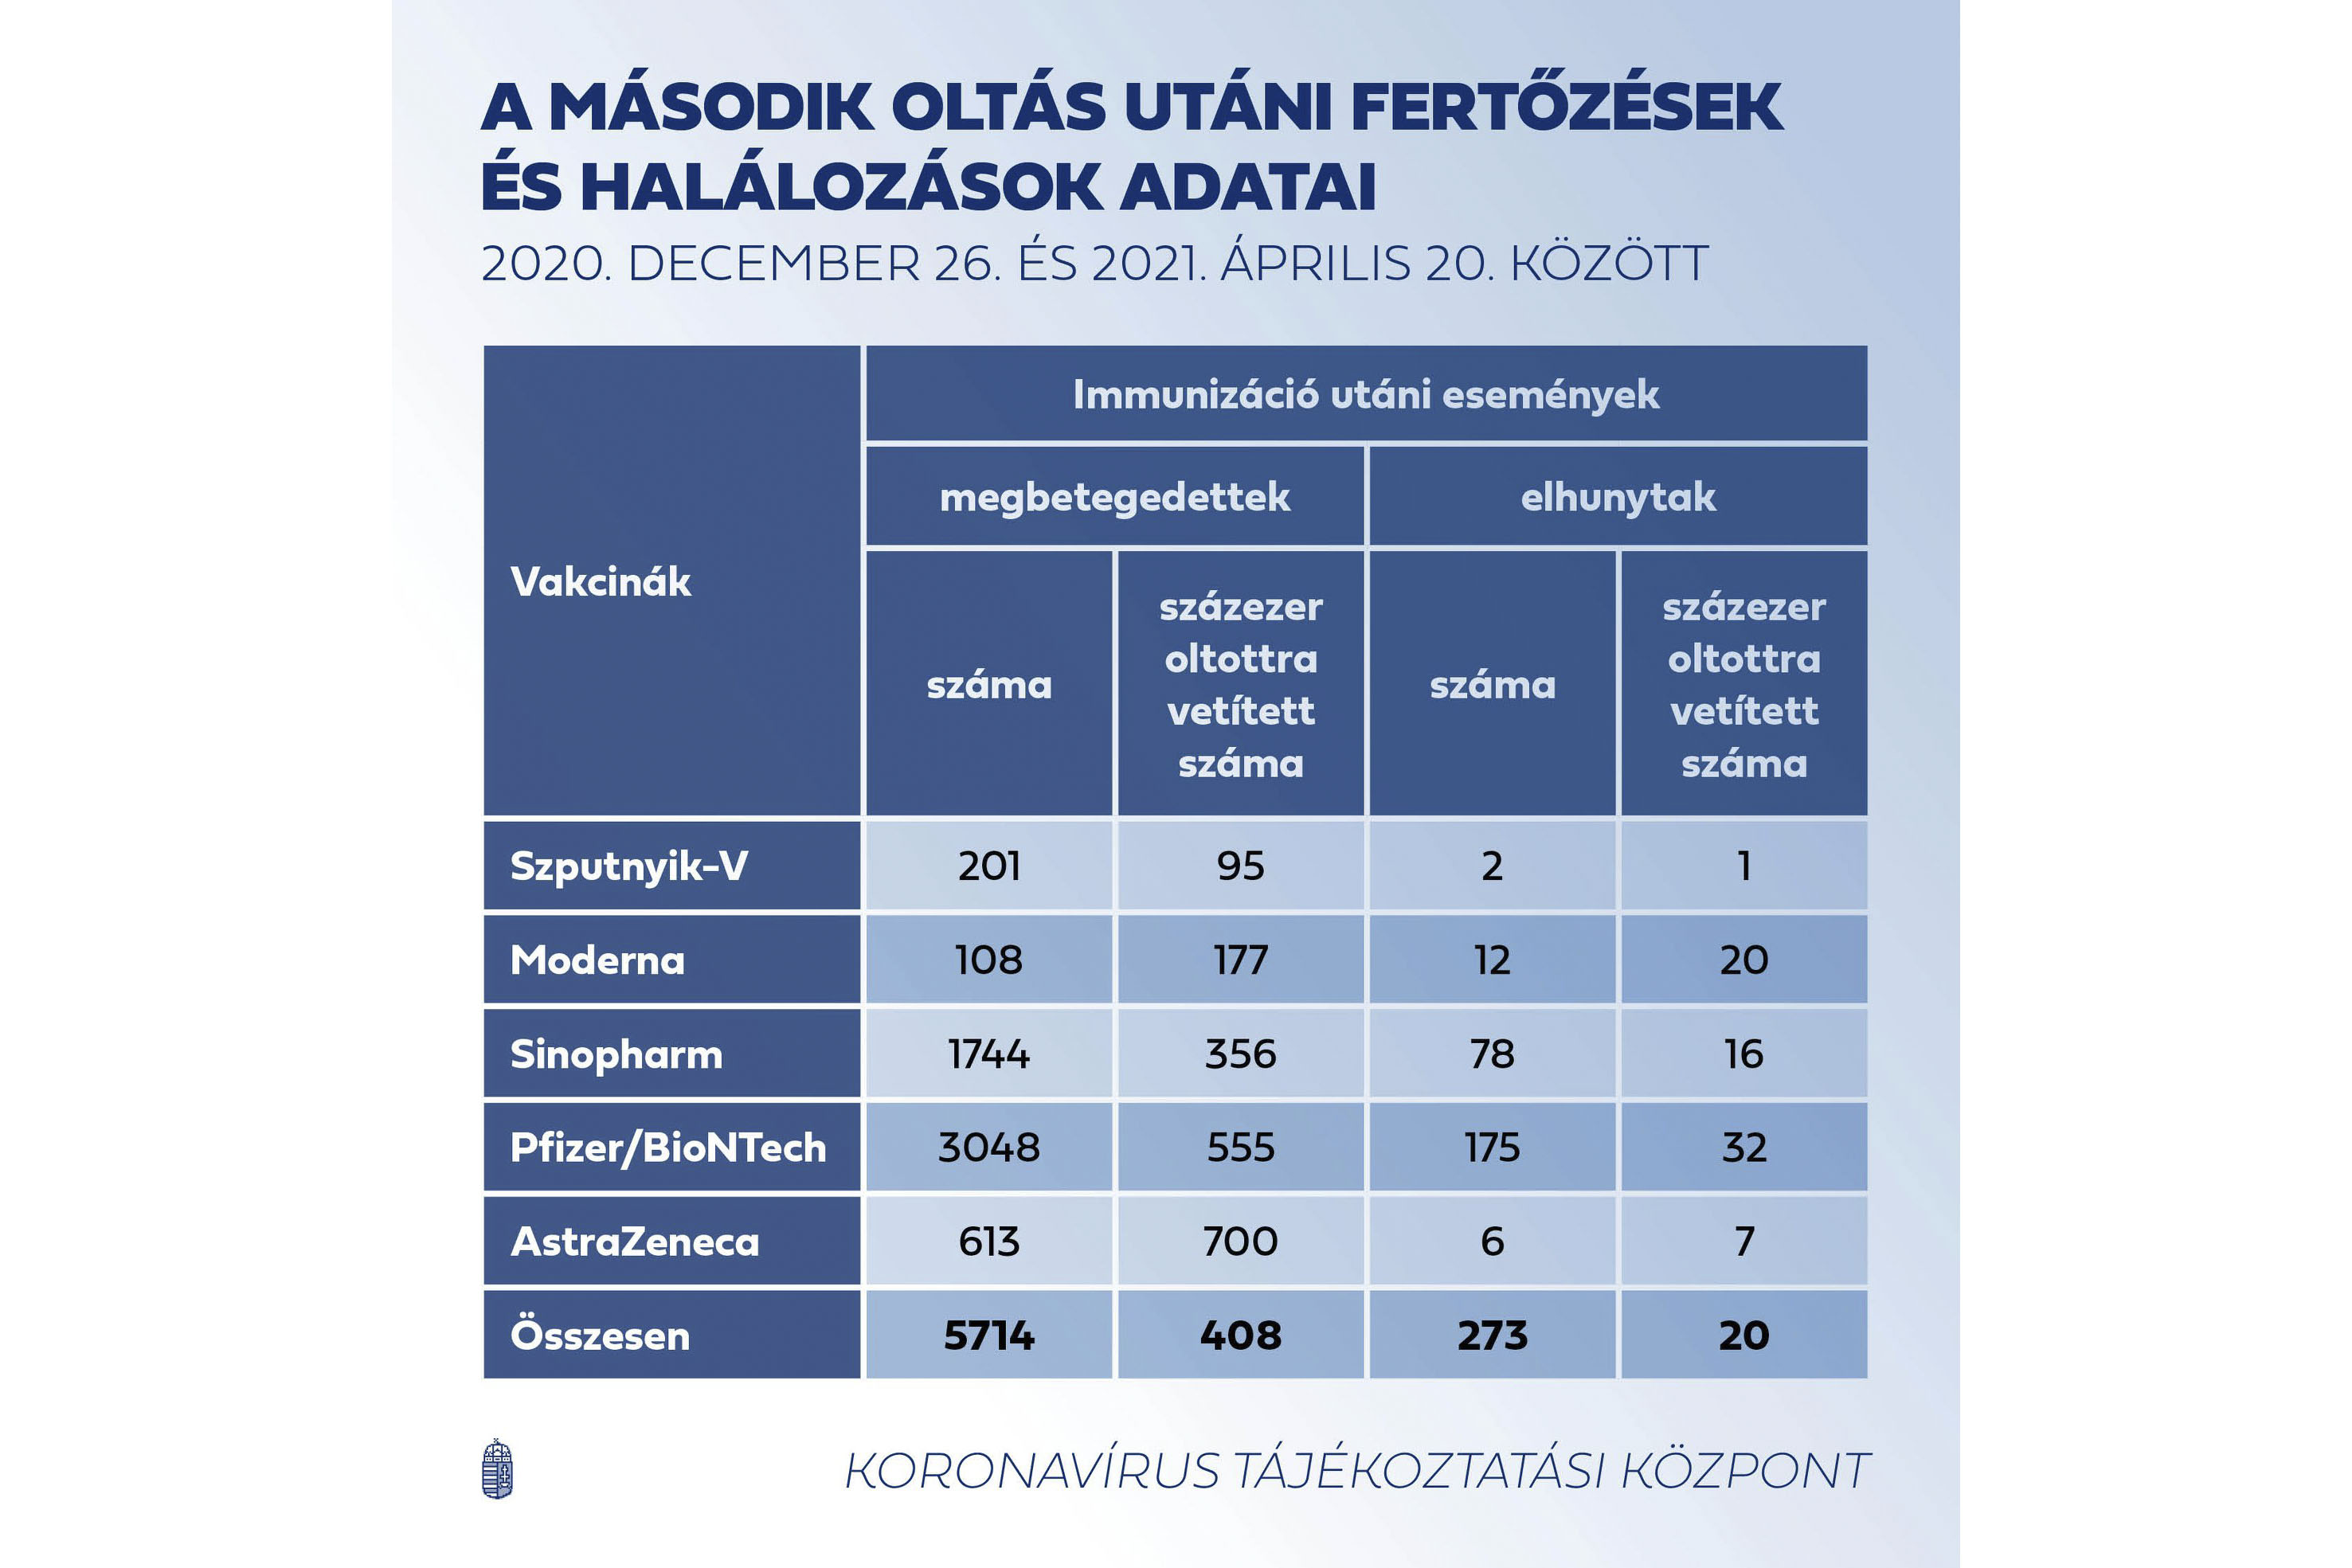 A Magyar Orvosi Kamara szerint is sántít a kormány vakcinatáblázata